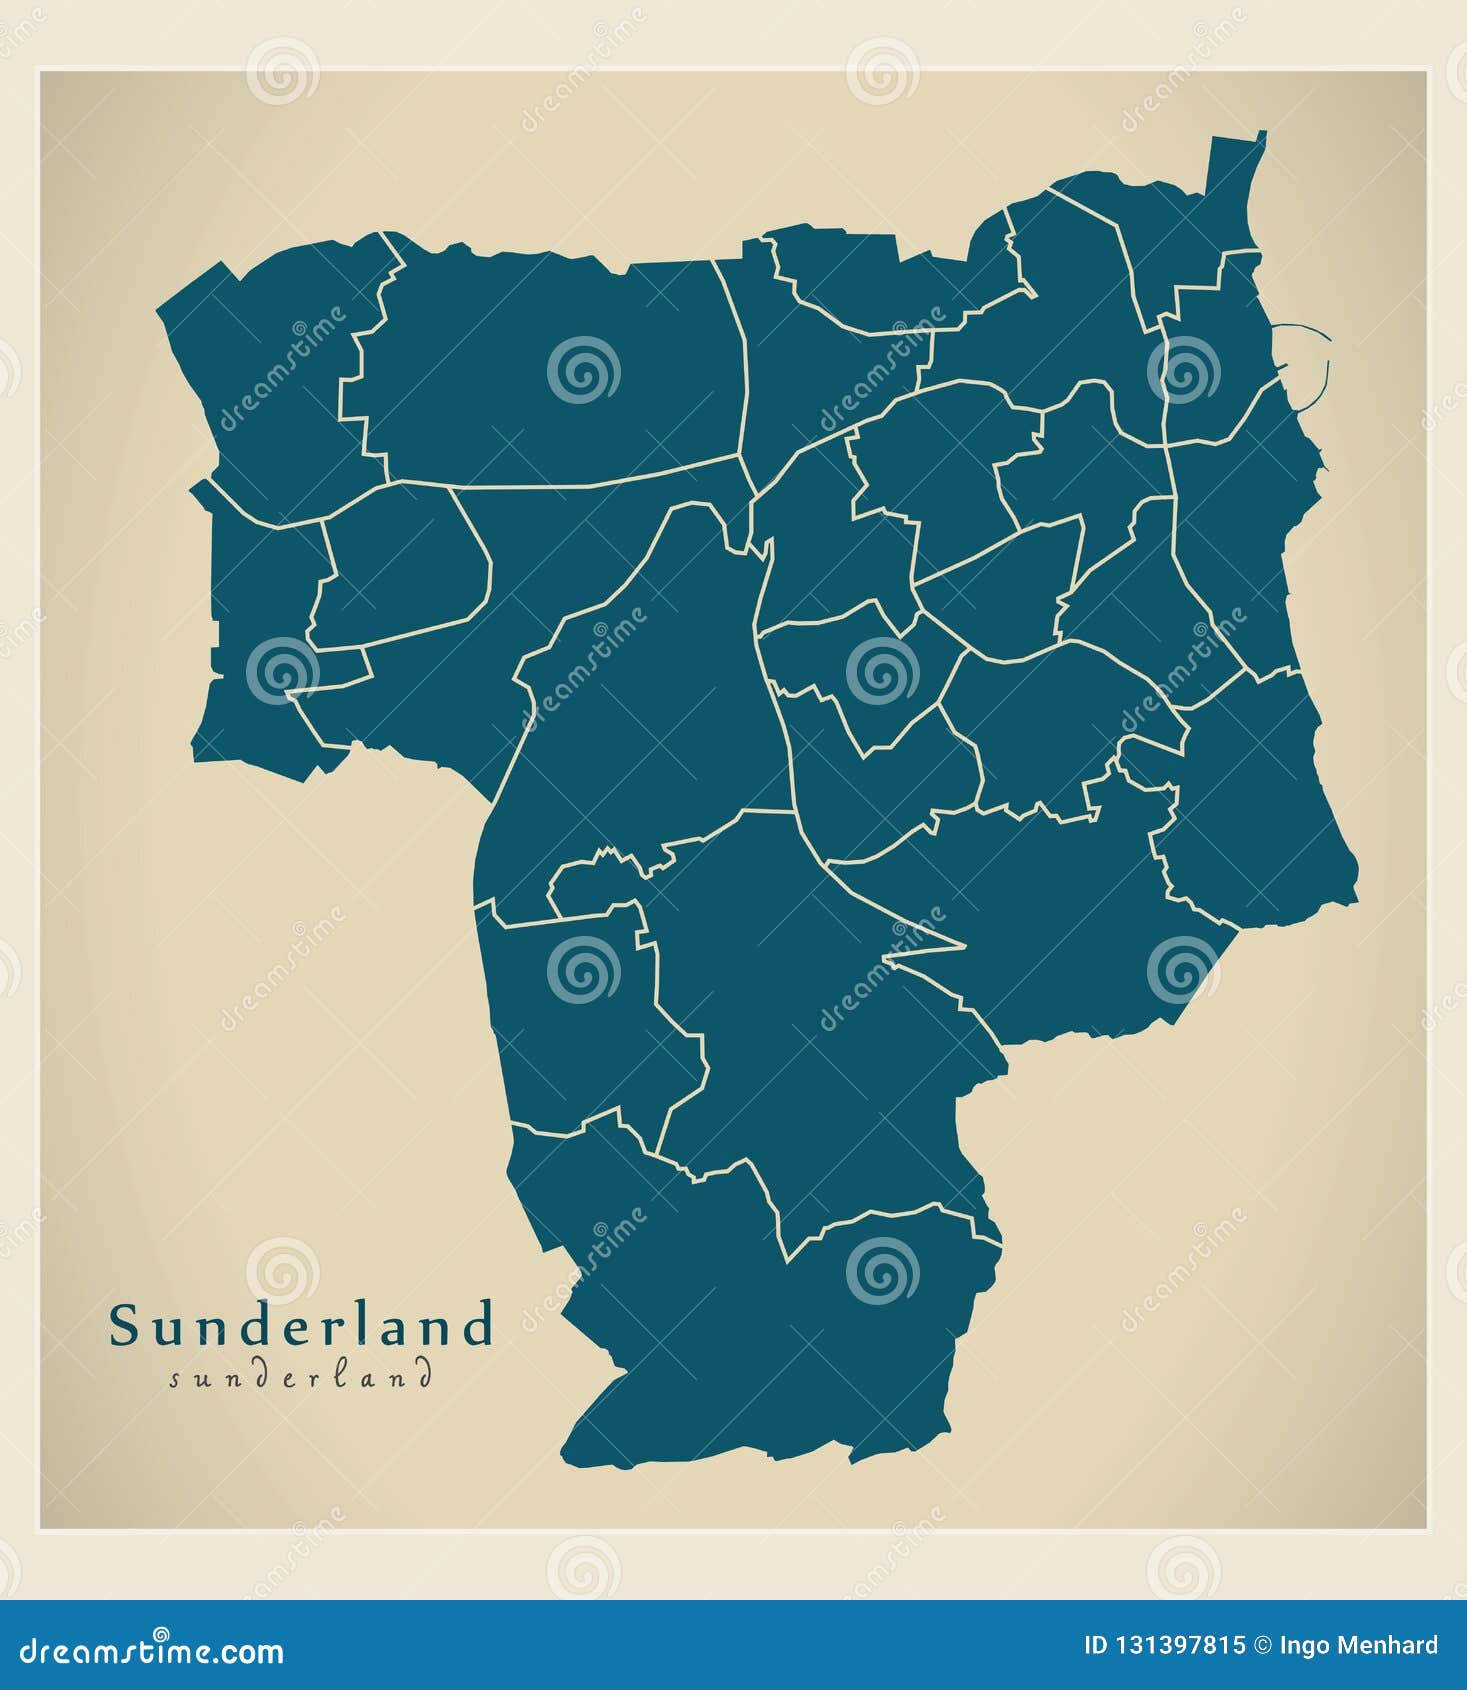 modern city map - sunderland city of england with wards uk